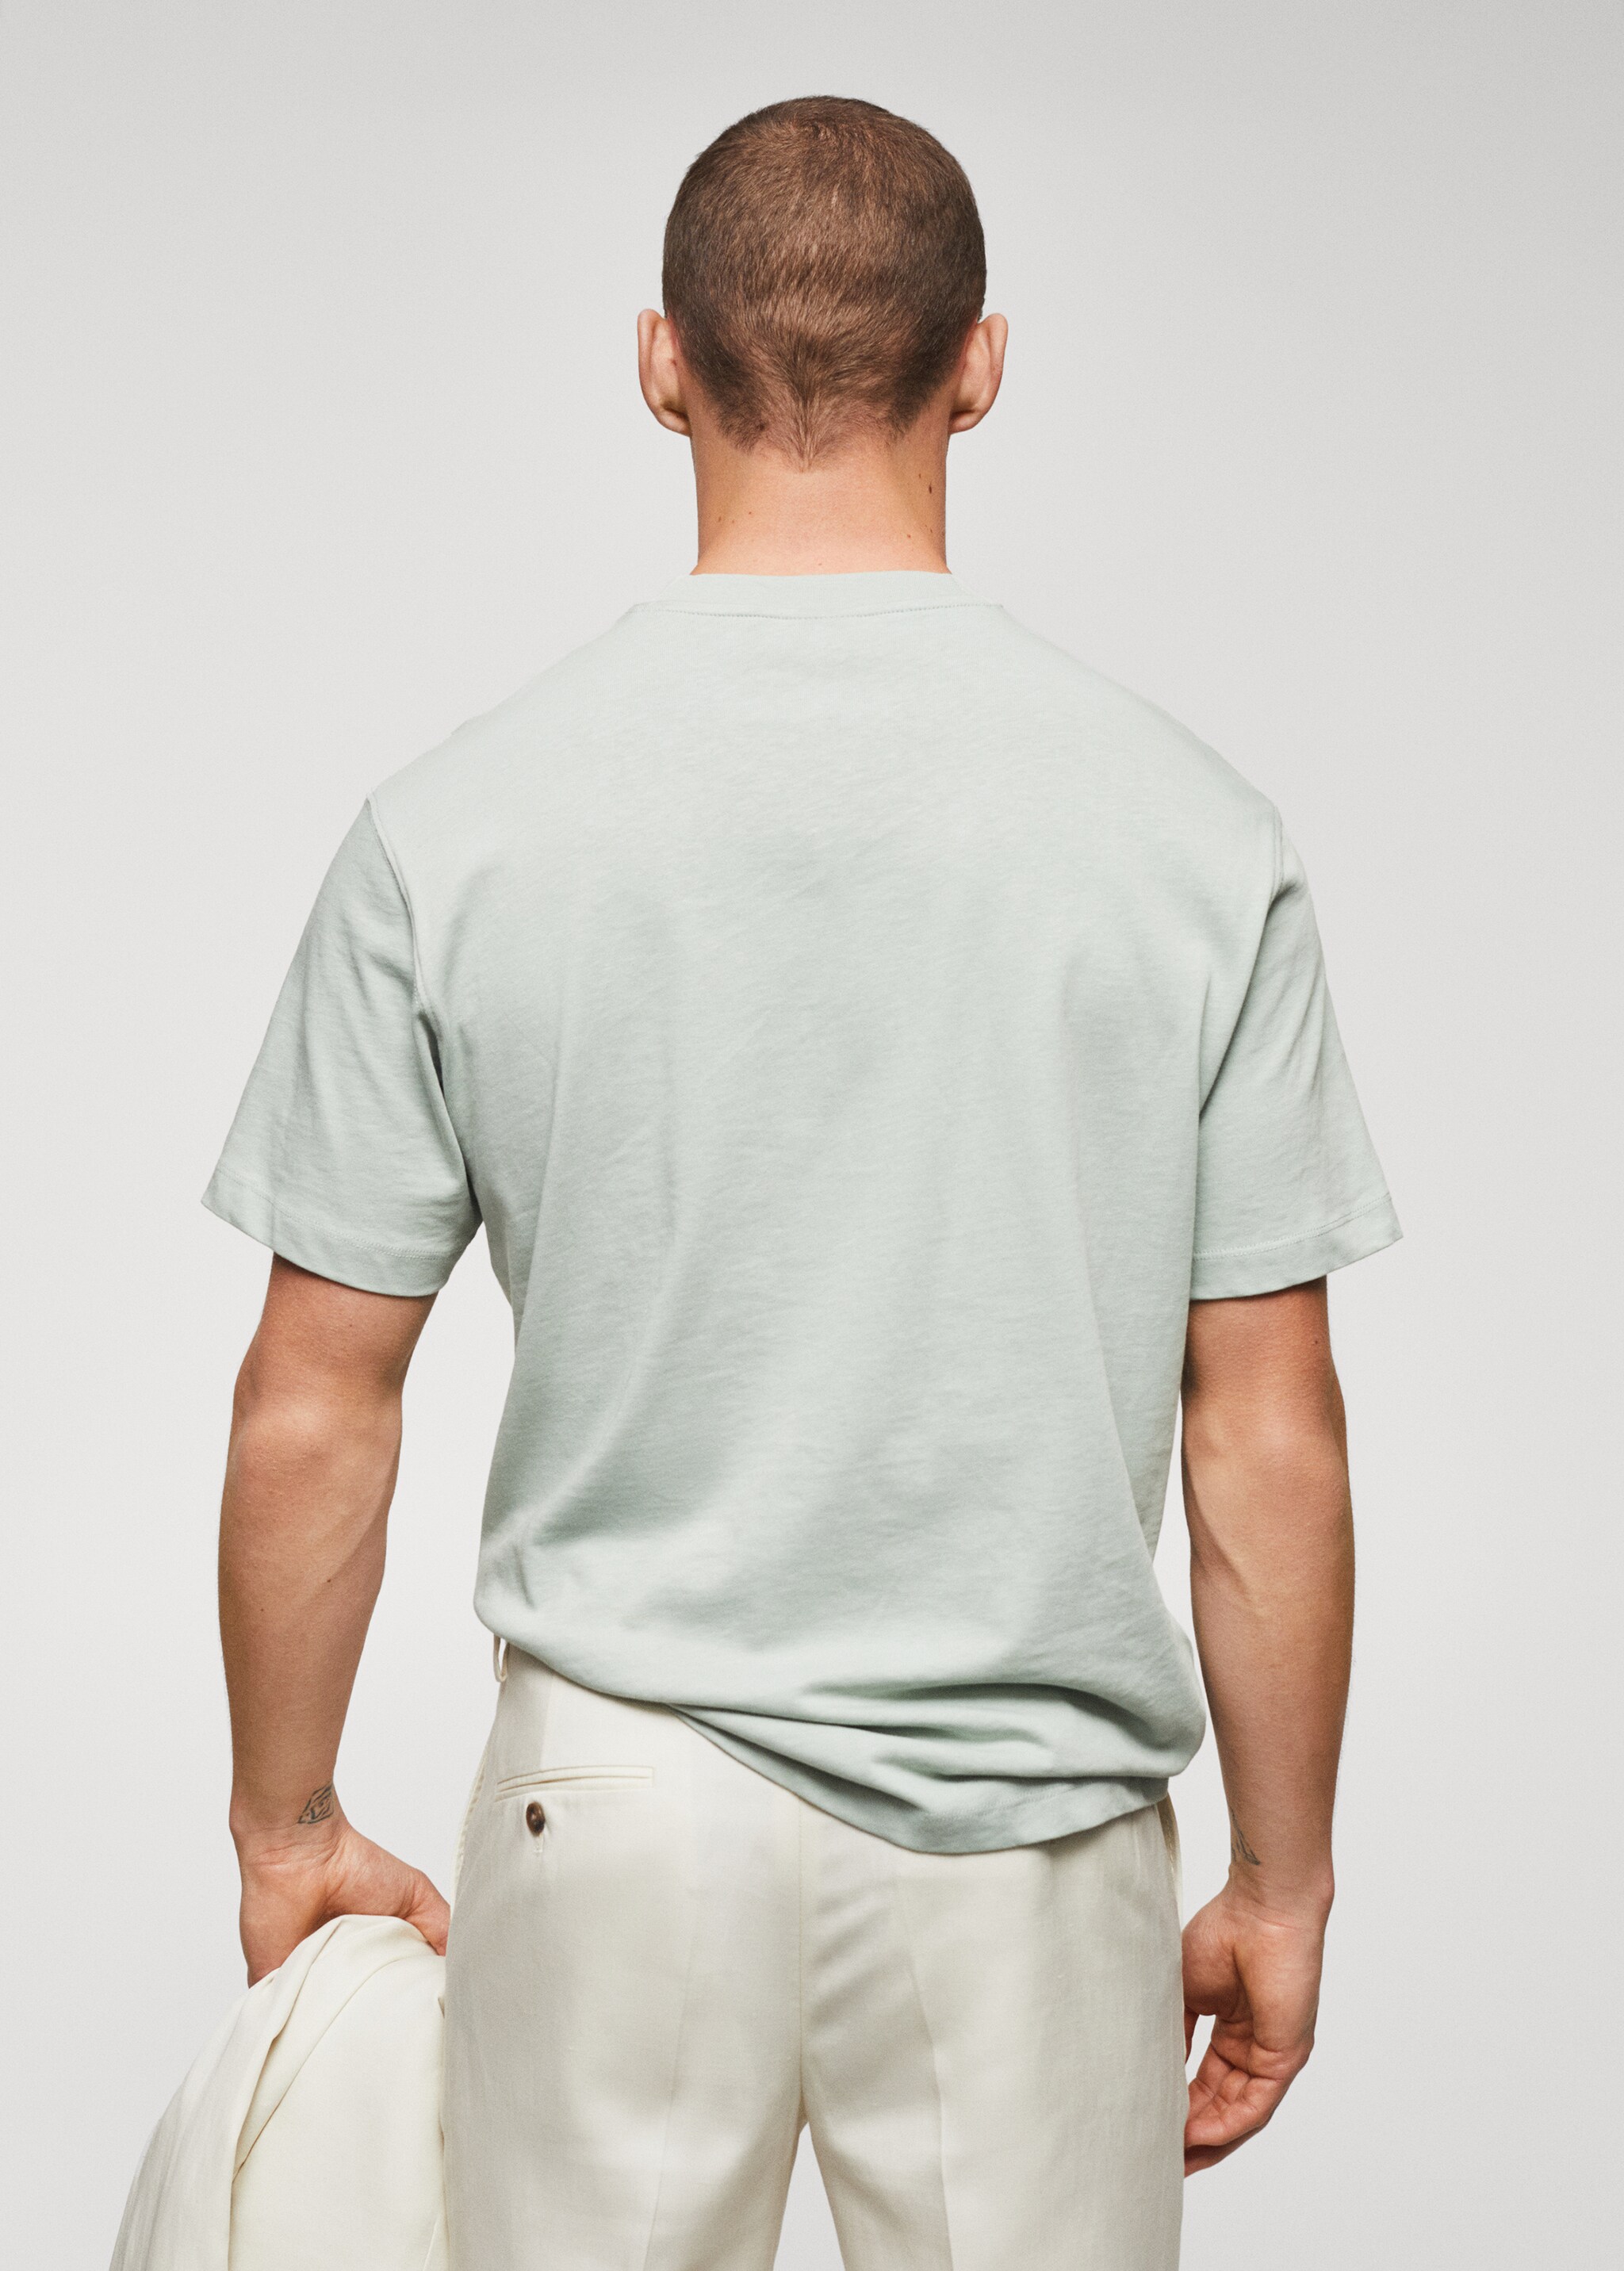 Camiseta algodón relaxed fit - Reverso del artículo